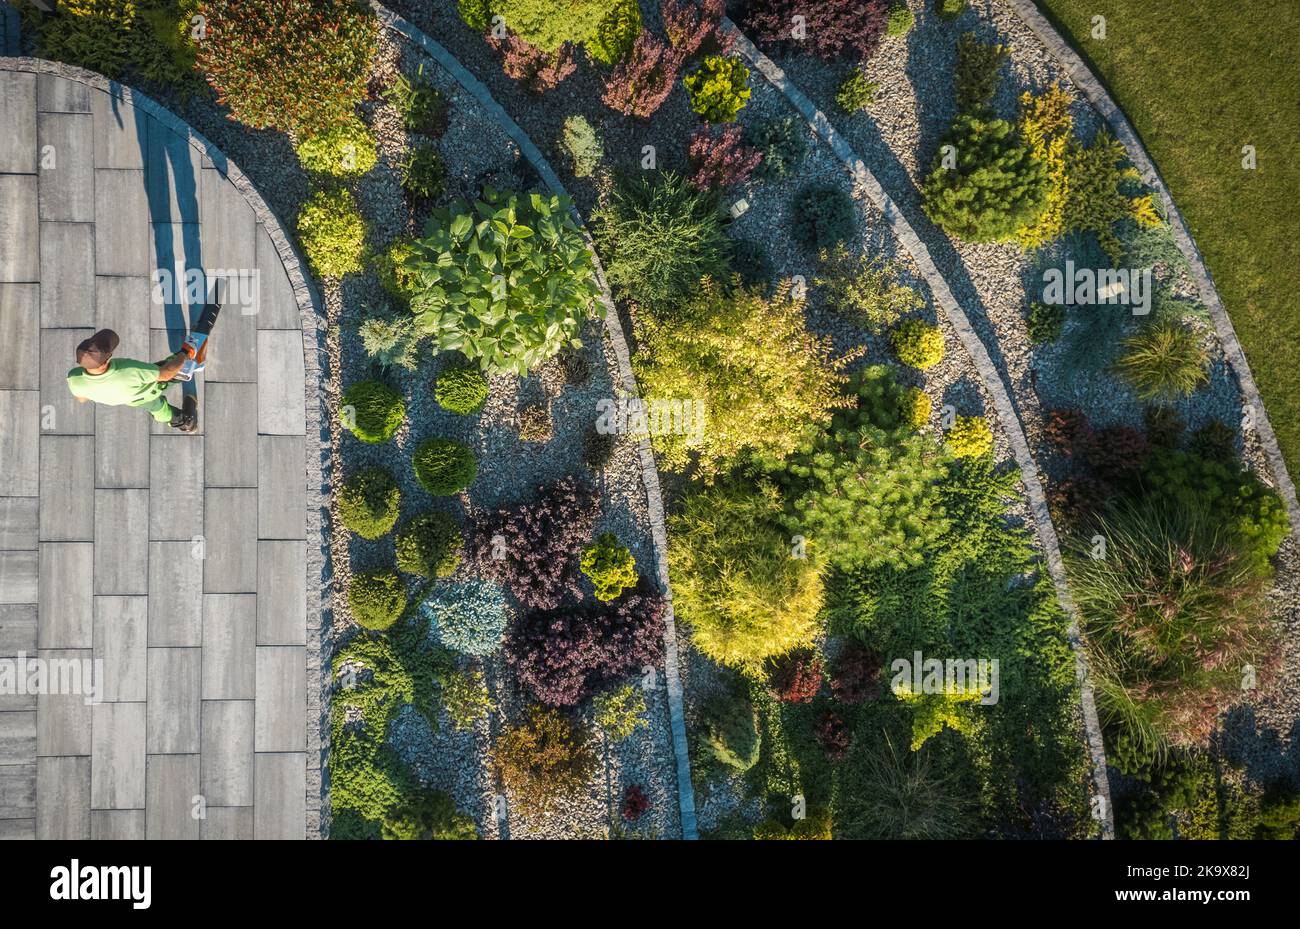 Vue aérienne du jardin résidentiel de Rockery et de l'homme soufflant des feuilles d'un chemin. Industrie de l'aménagement paysager et du jardinage. Banque D'Images